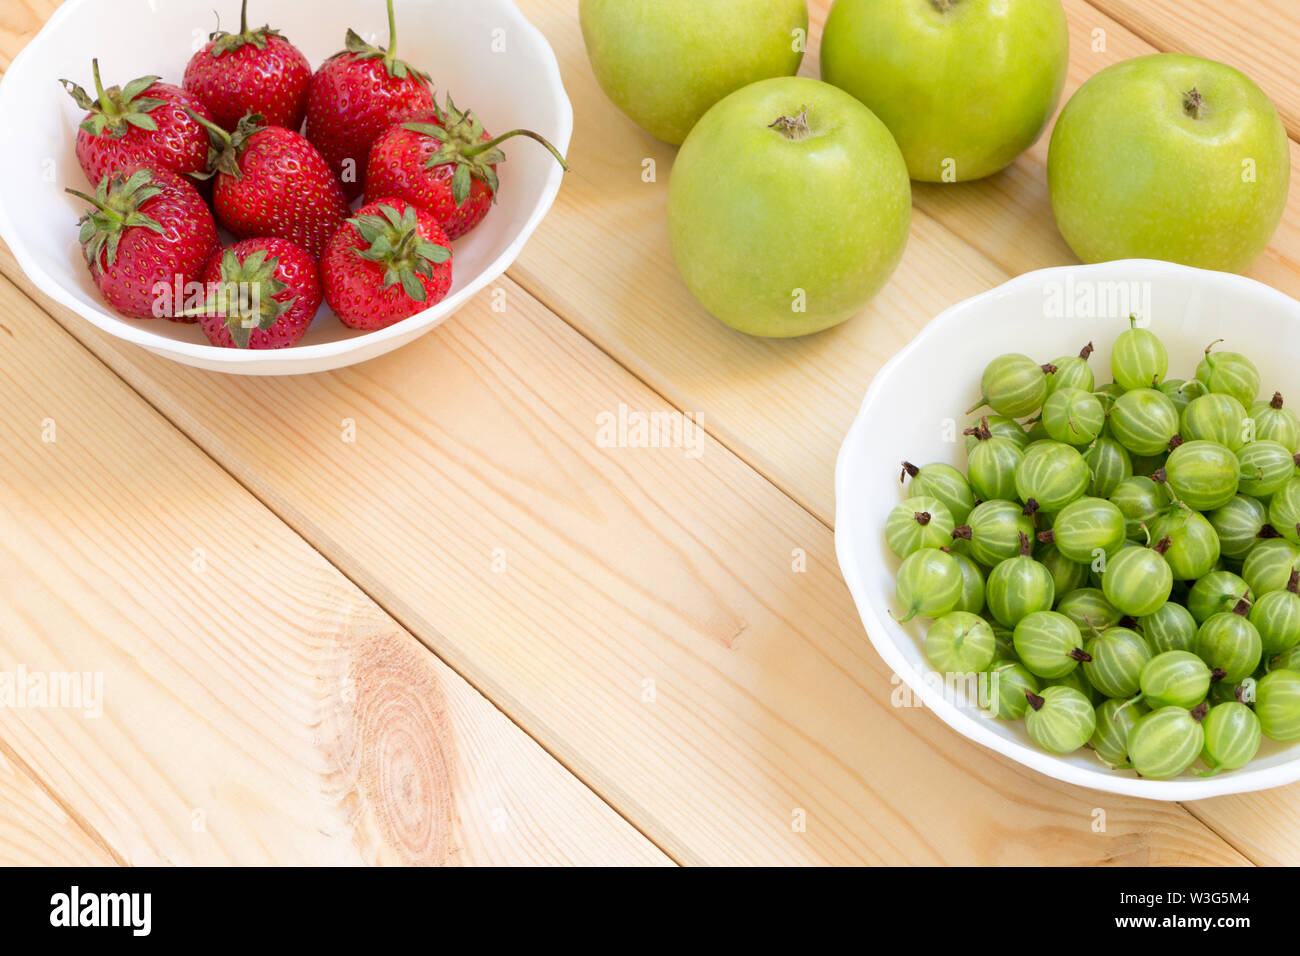 La pomme verte, de groseille et de fraise rouge en blanc sur la lumière bowles table en bois. Arrière-plan avec des fruits et baies avec copie espace. Place f Banque D'Images